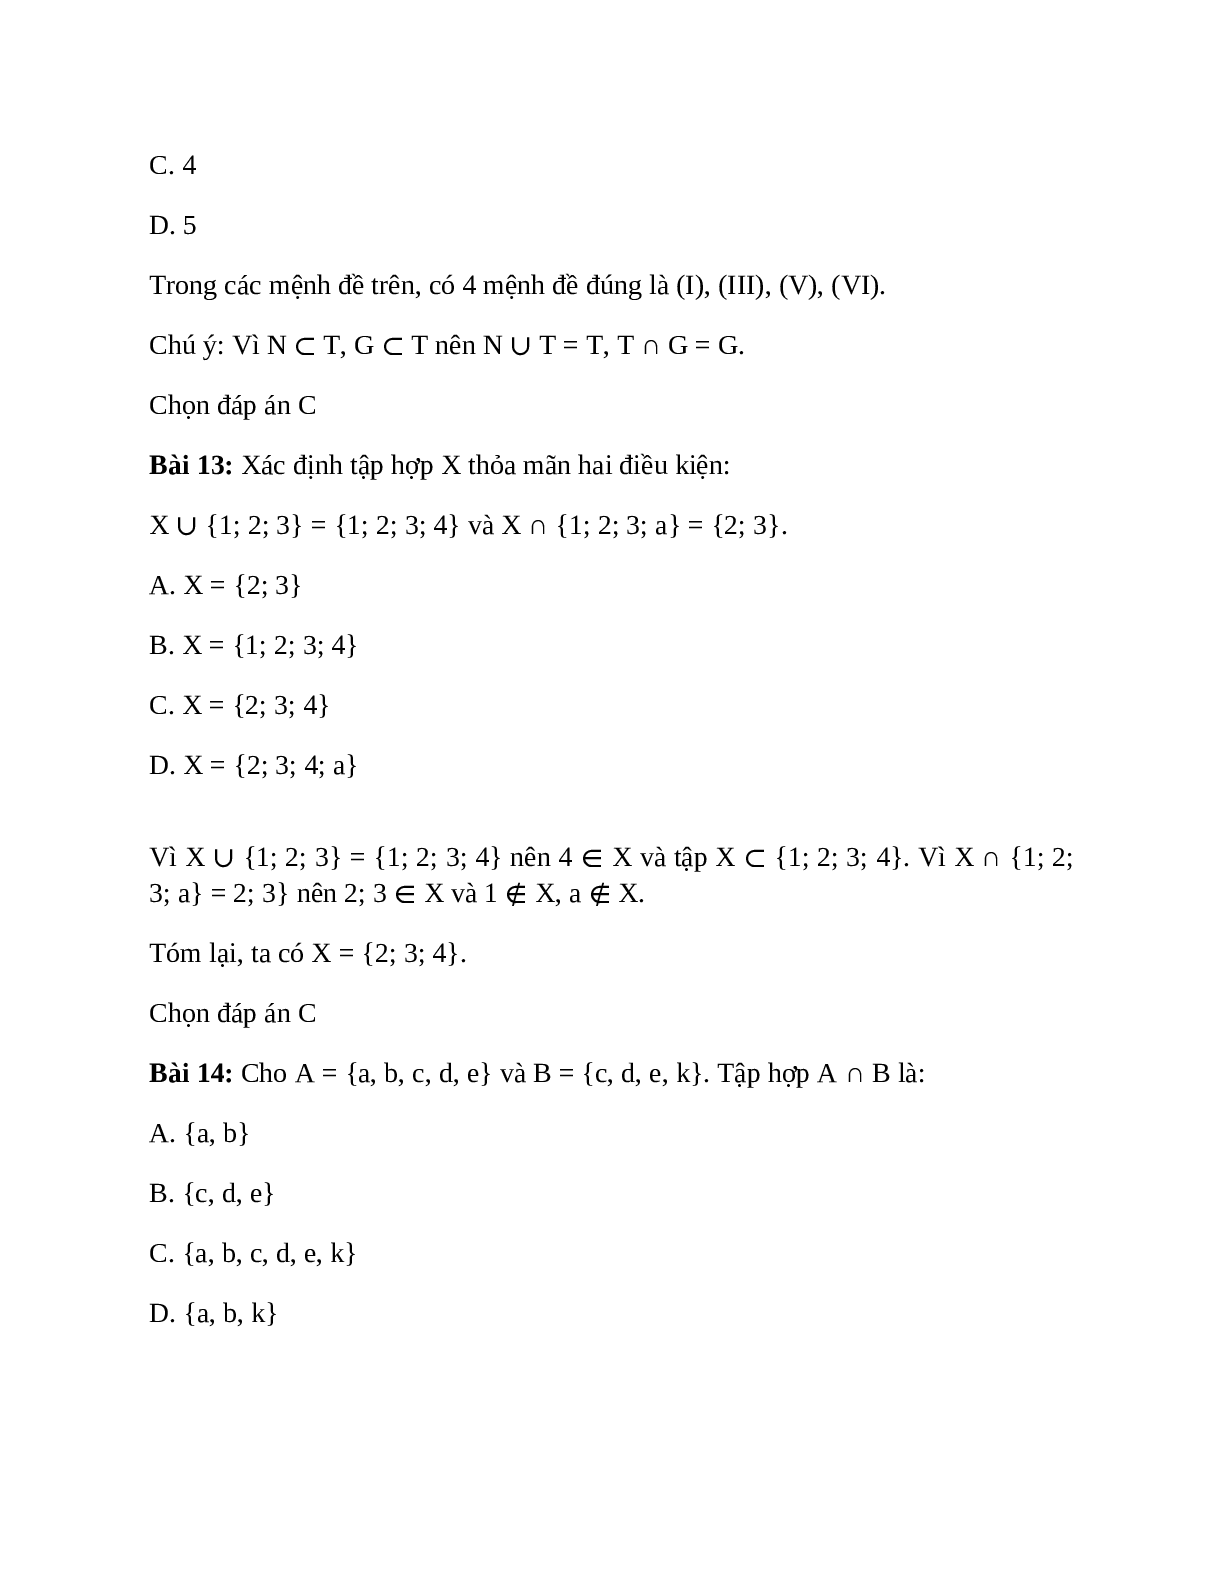 Trắc nghiệm Các phép toán tập hợp có đáp án – Toán lớp 10 (trang 8)